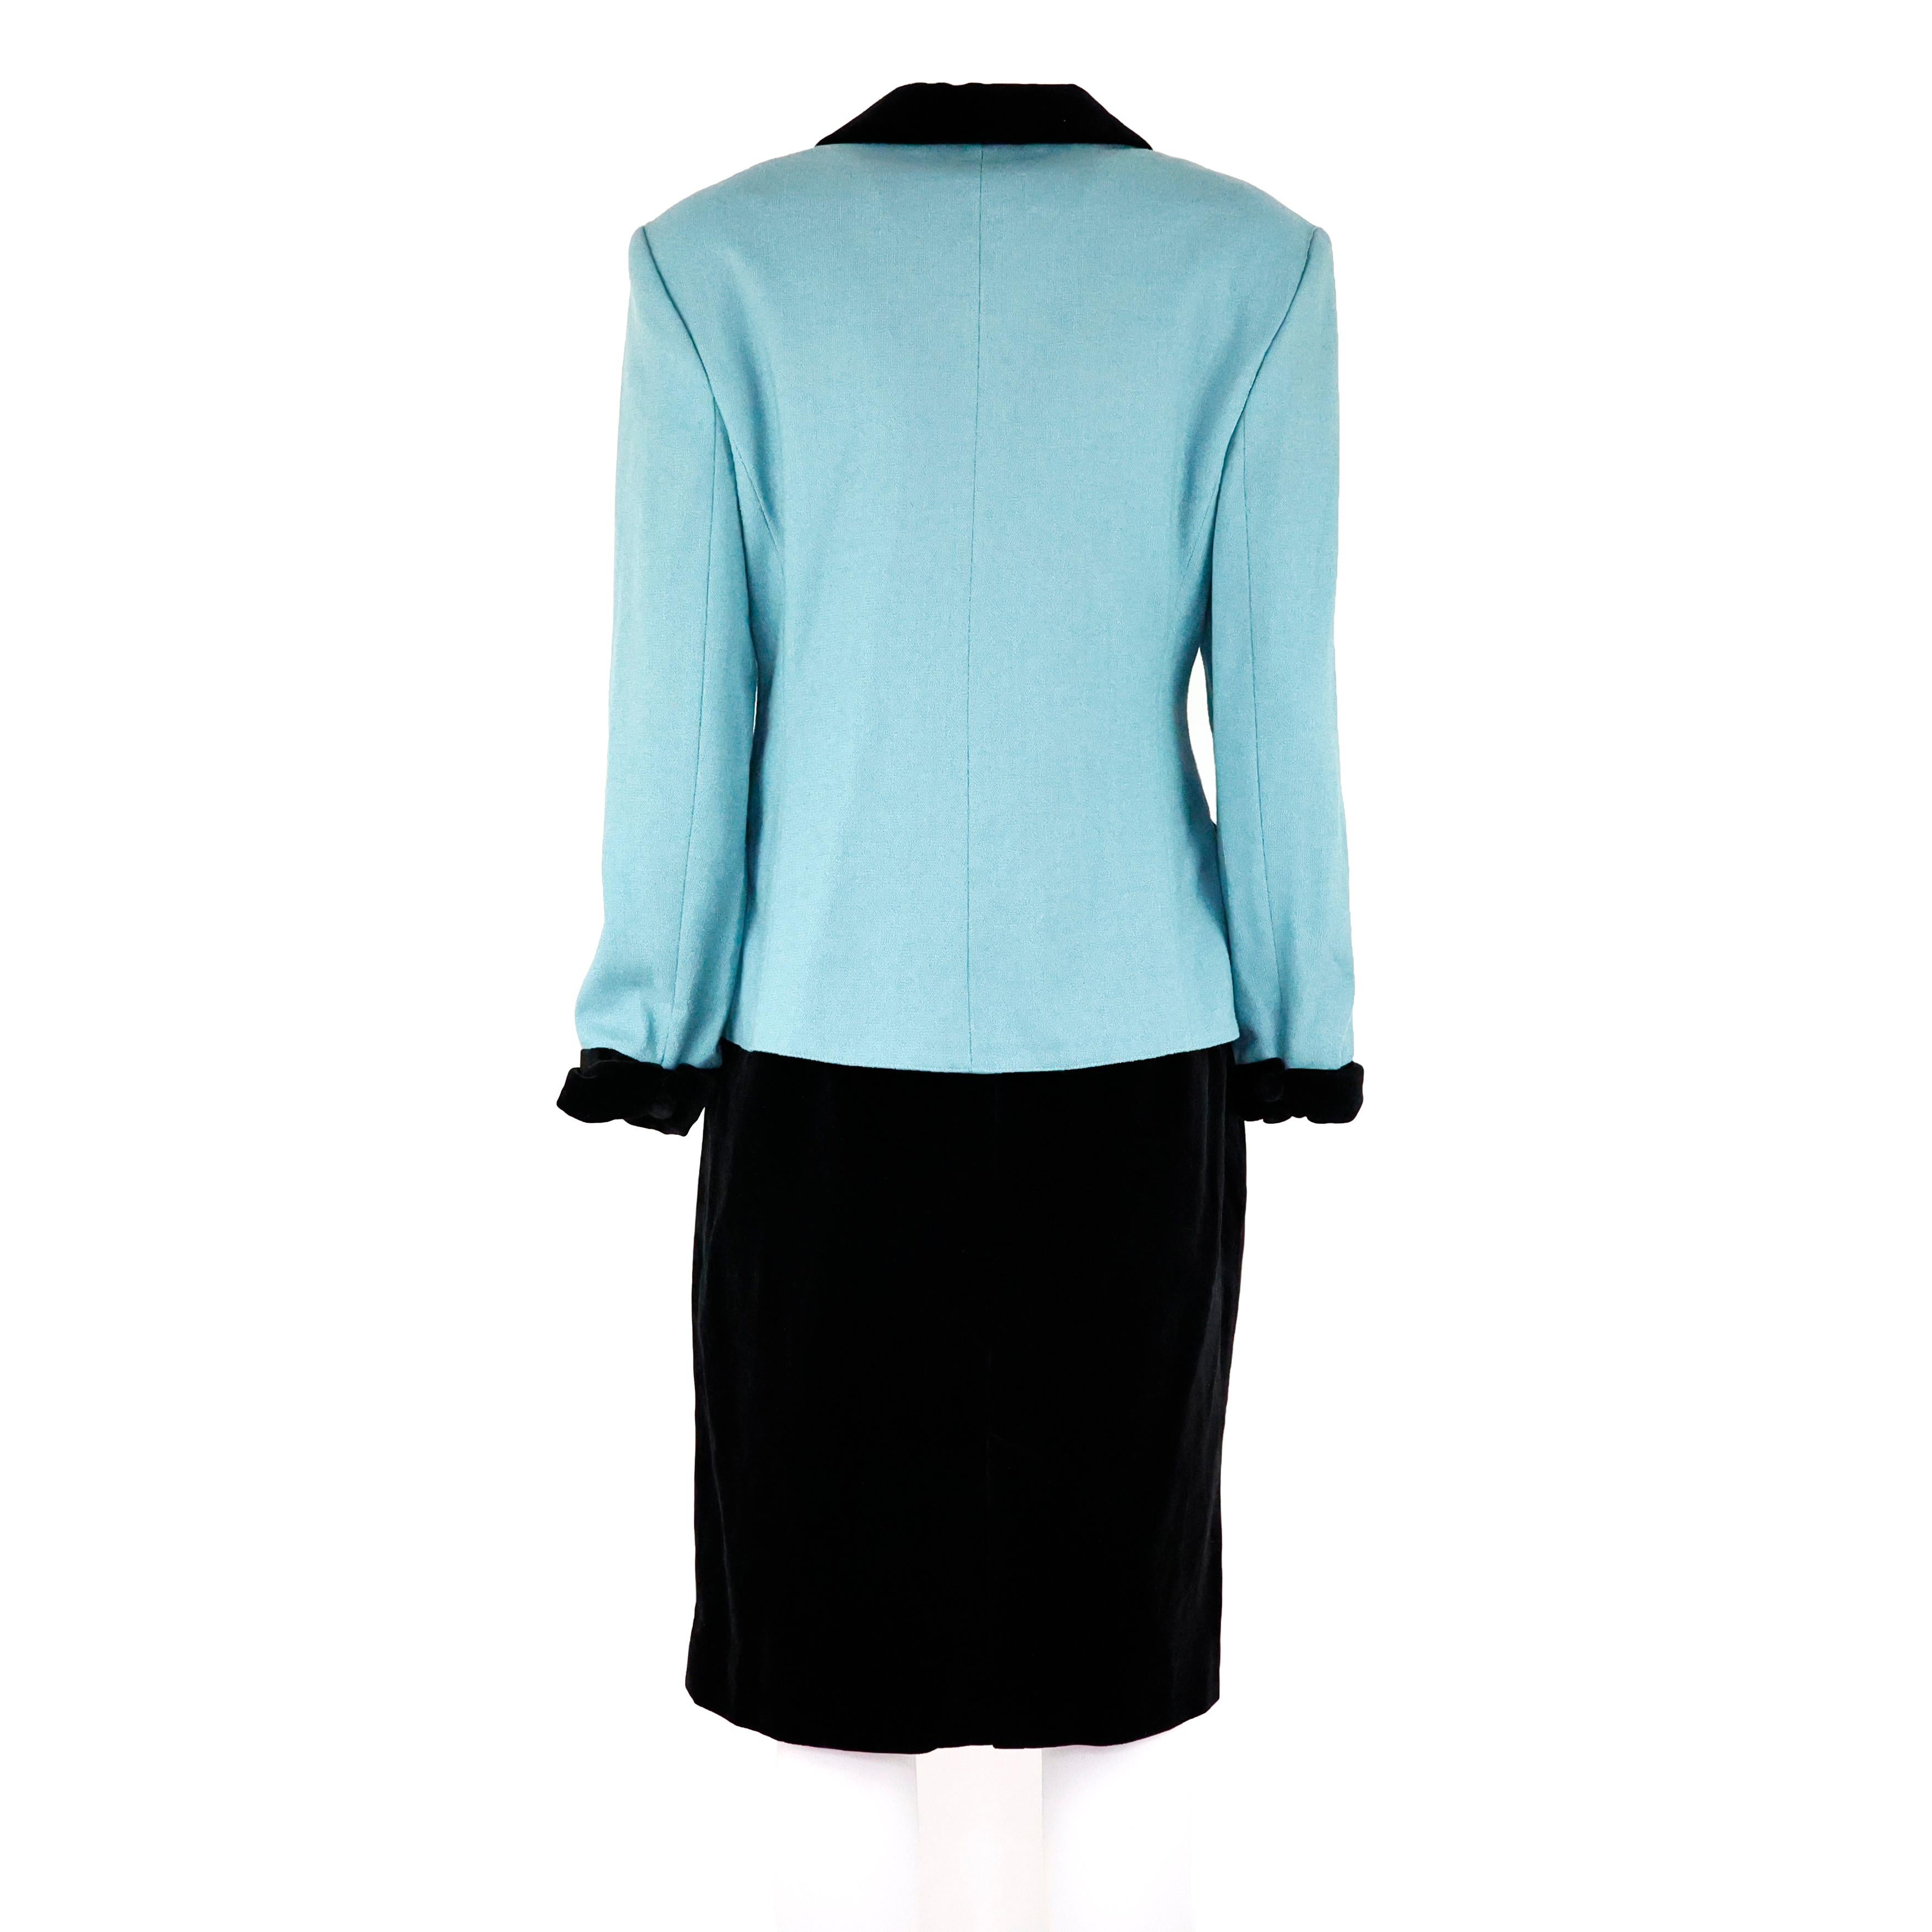 Ensemble tailleur Fendi veste et jupe en laine et velours coloris turquoise et noir. Taille 44 IT

Condit :
Vraiment bien.